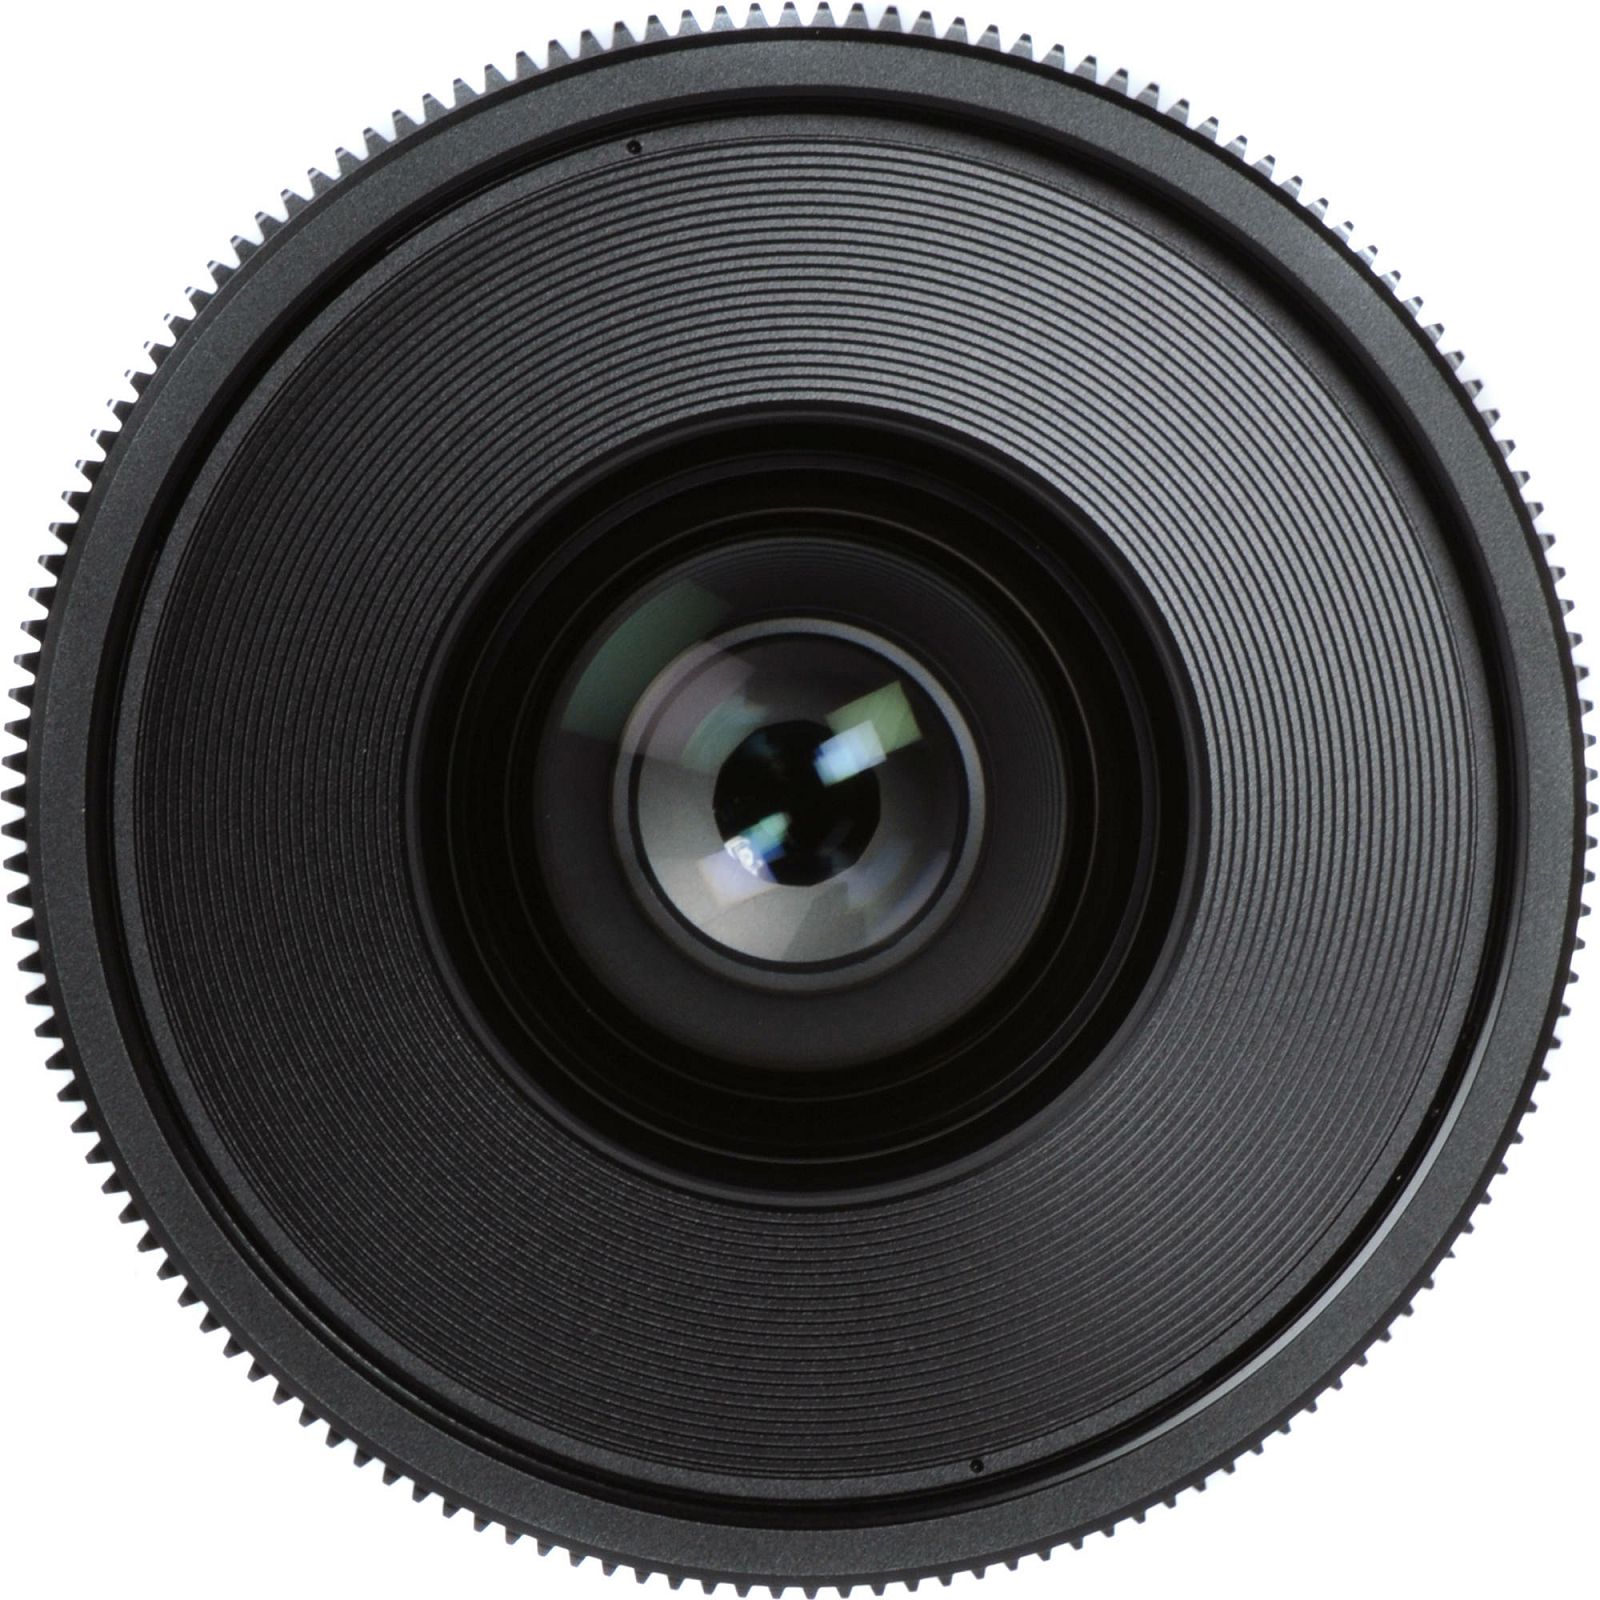 Canon Cine Lens KIT CN-E 14/24/35 Bundle Primes lens set (CN-E 14mm T3.1 L F + CN-E 24mm T1.5 L F + CN-E 35mm T1.5 L F) (9139B013AA)